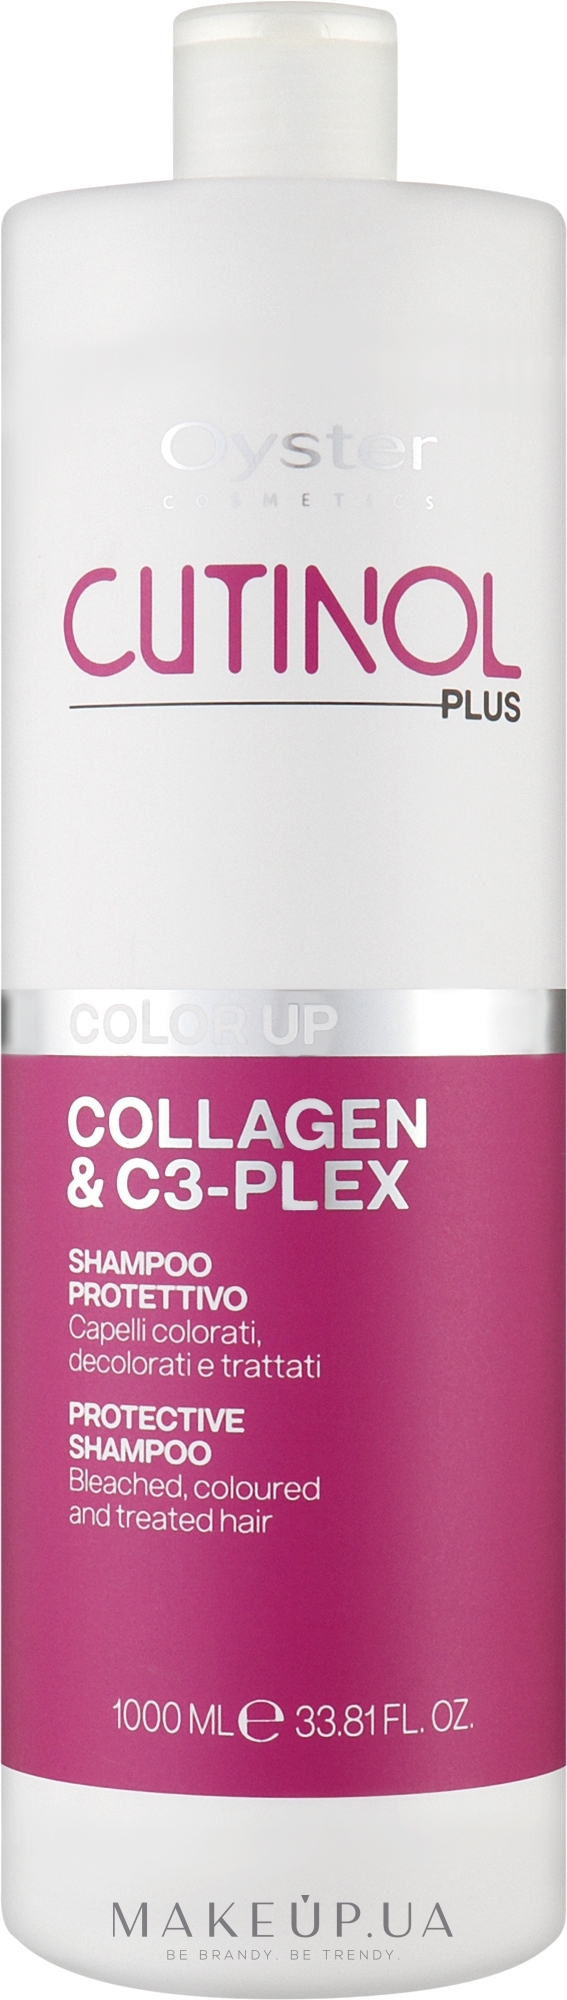 Шампунь для окрашенных волос - Oyster Cutinol Plus Collagen & C3-Plex Color Up Protective Shampoo — фото 1000ml